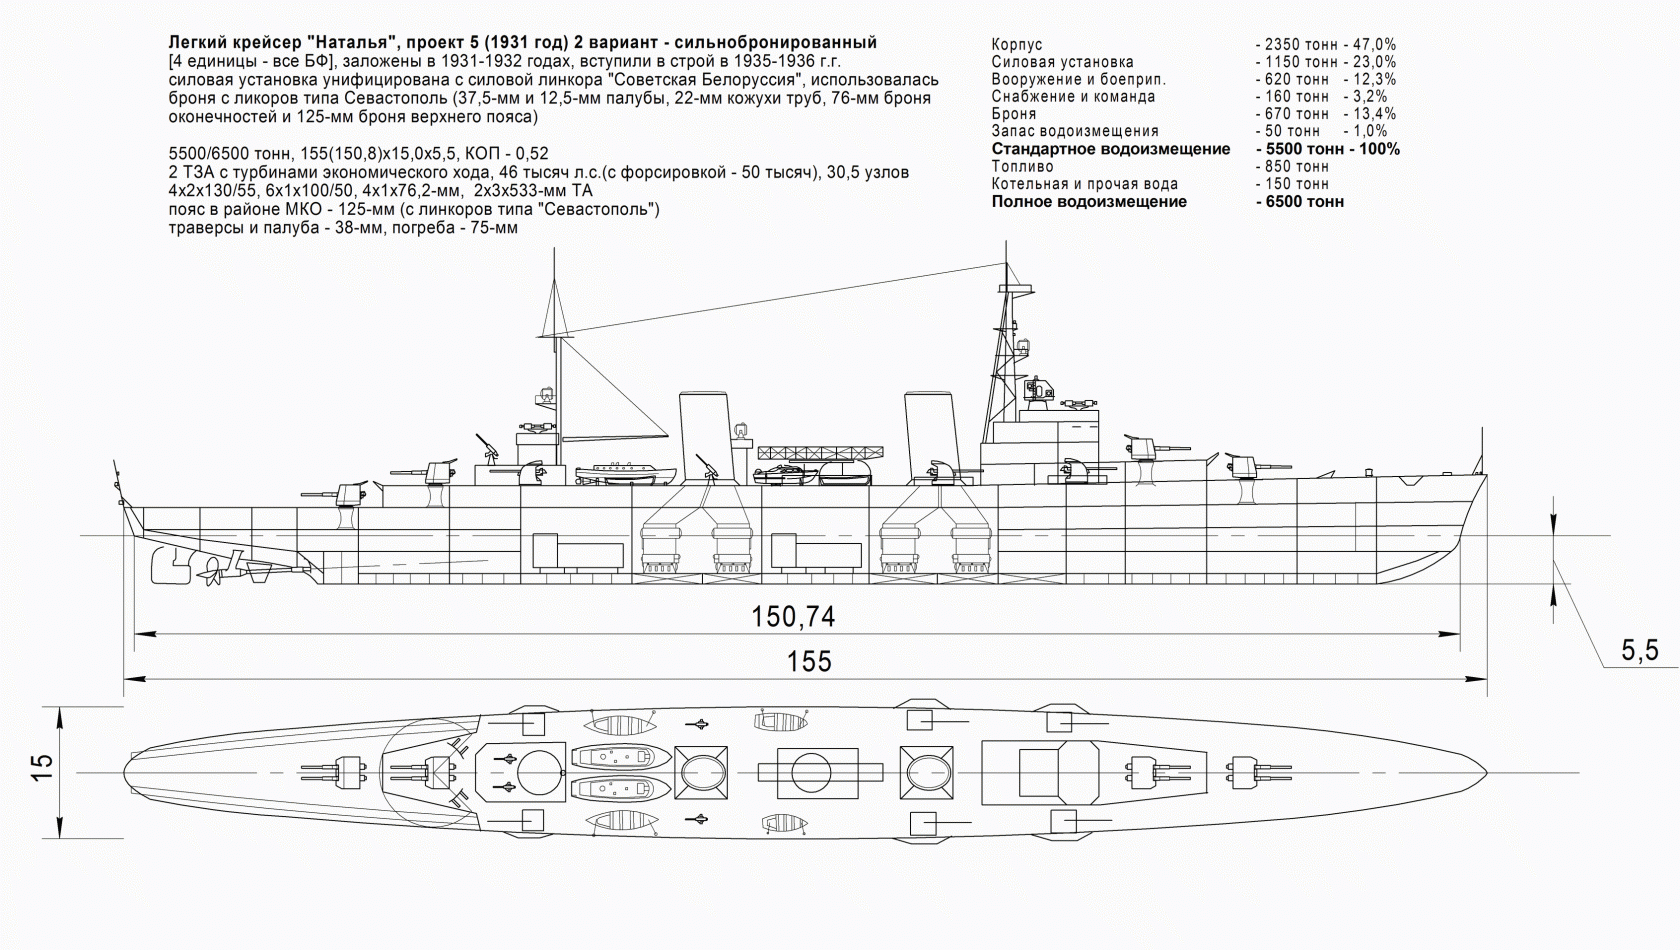 Часть 4. Крейсера типа "Наталья" и "Клавдия" - развитие крейсеров типа "Светлана"